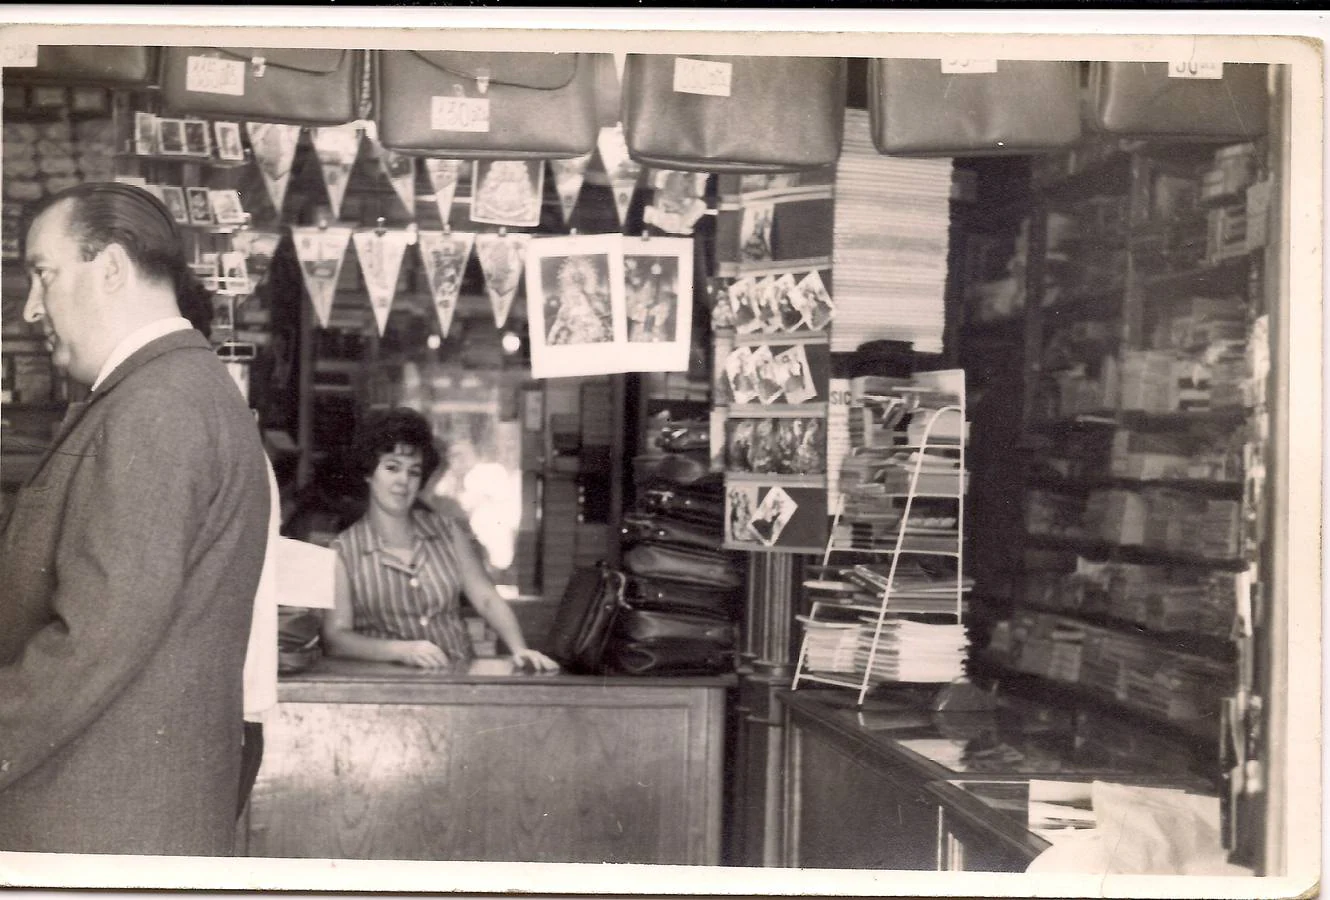 Principios de 1960. María del Carmen Campoy, esposa de Manuel Ferrer González, uno de los titulares de la tienda en los años 60